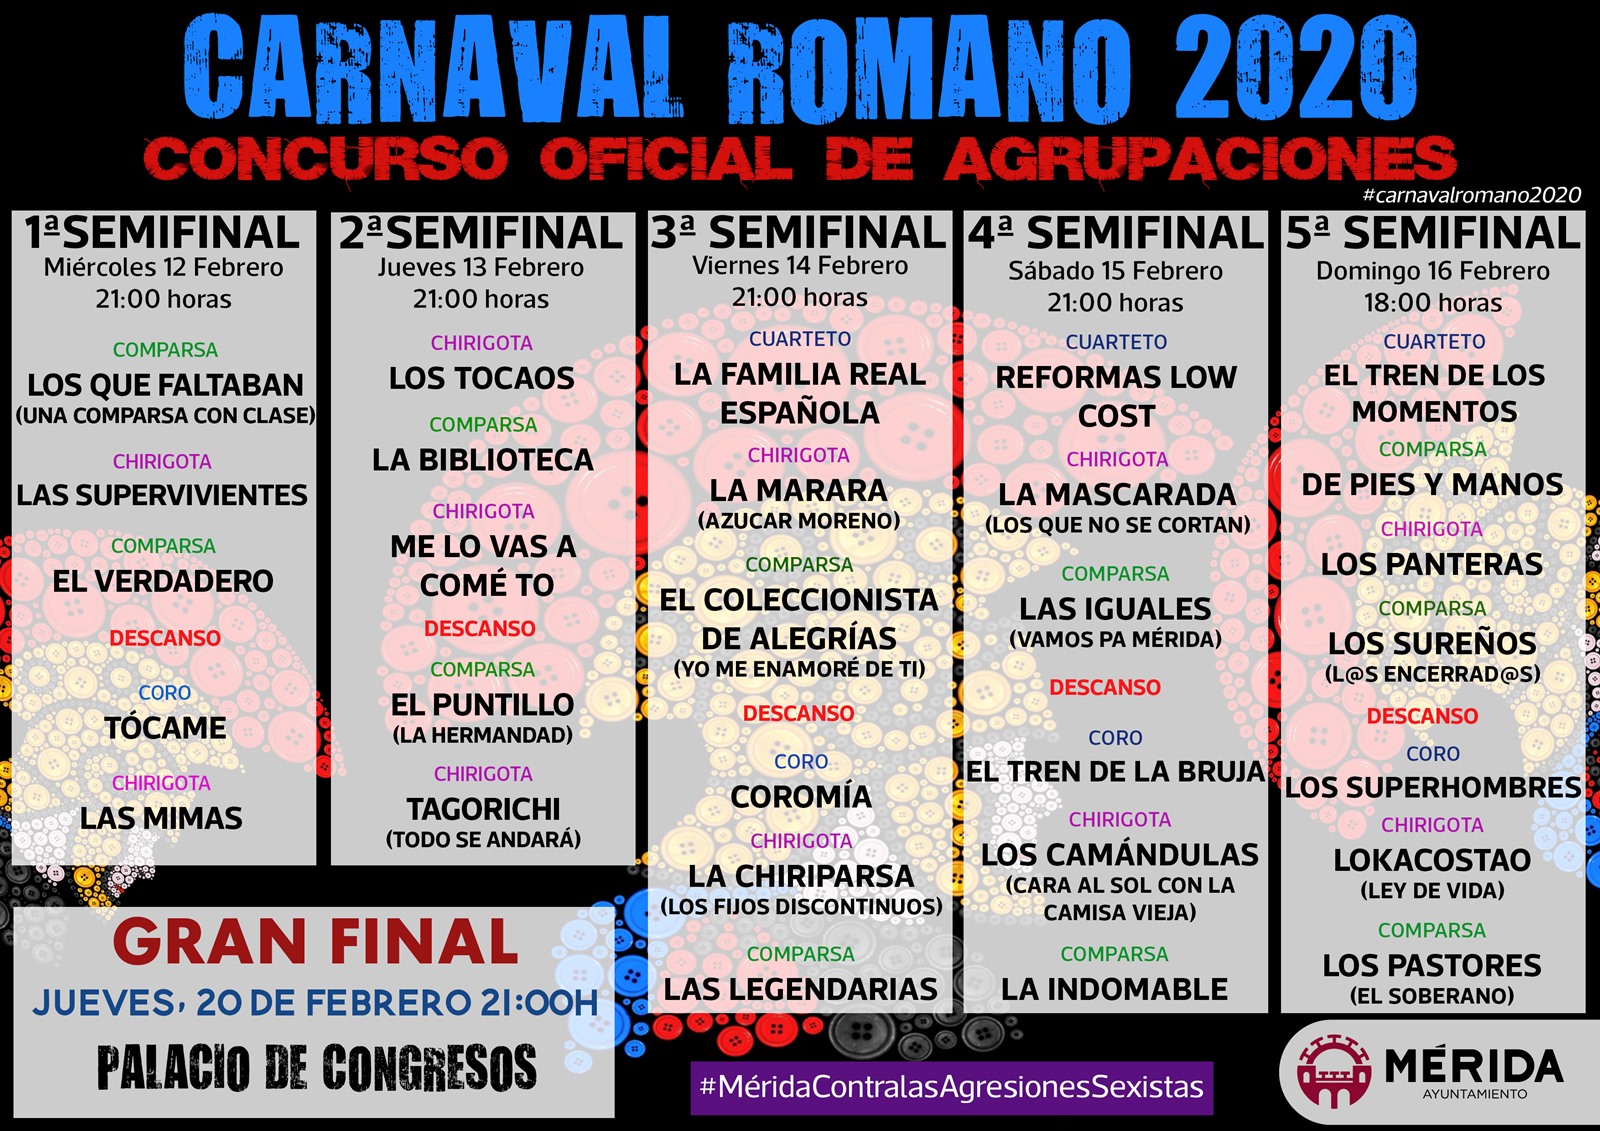 Las semifinales del Carnaval Romano 2020 se inician hoy en el Palacio de Congresos